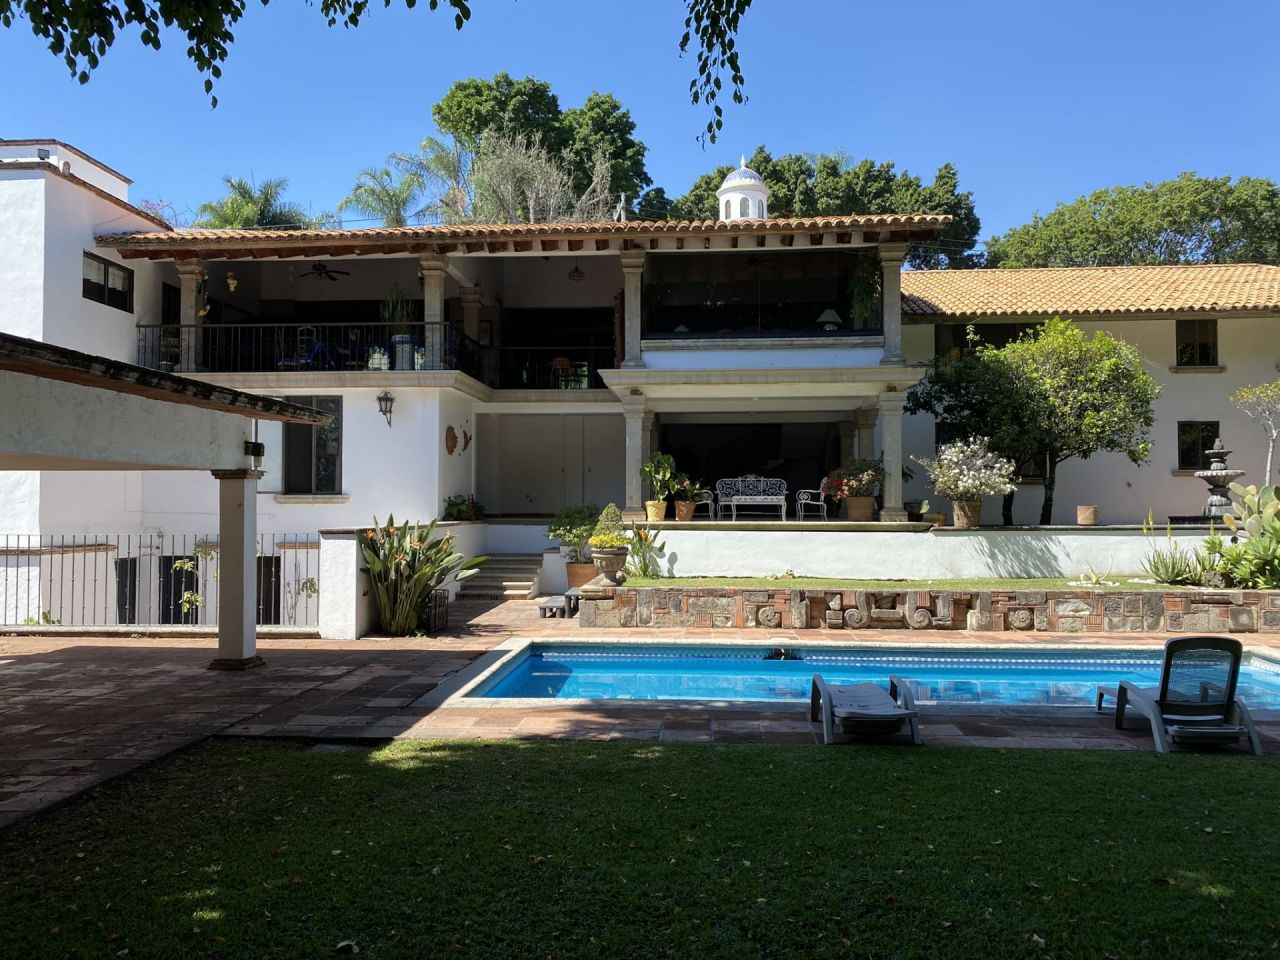 Casa en renta mensual Club de Golf Tabachines, Cuernavaca Morelos - TABMP15  | Alianza Bienes Raices